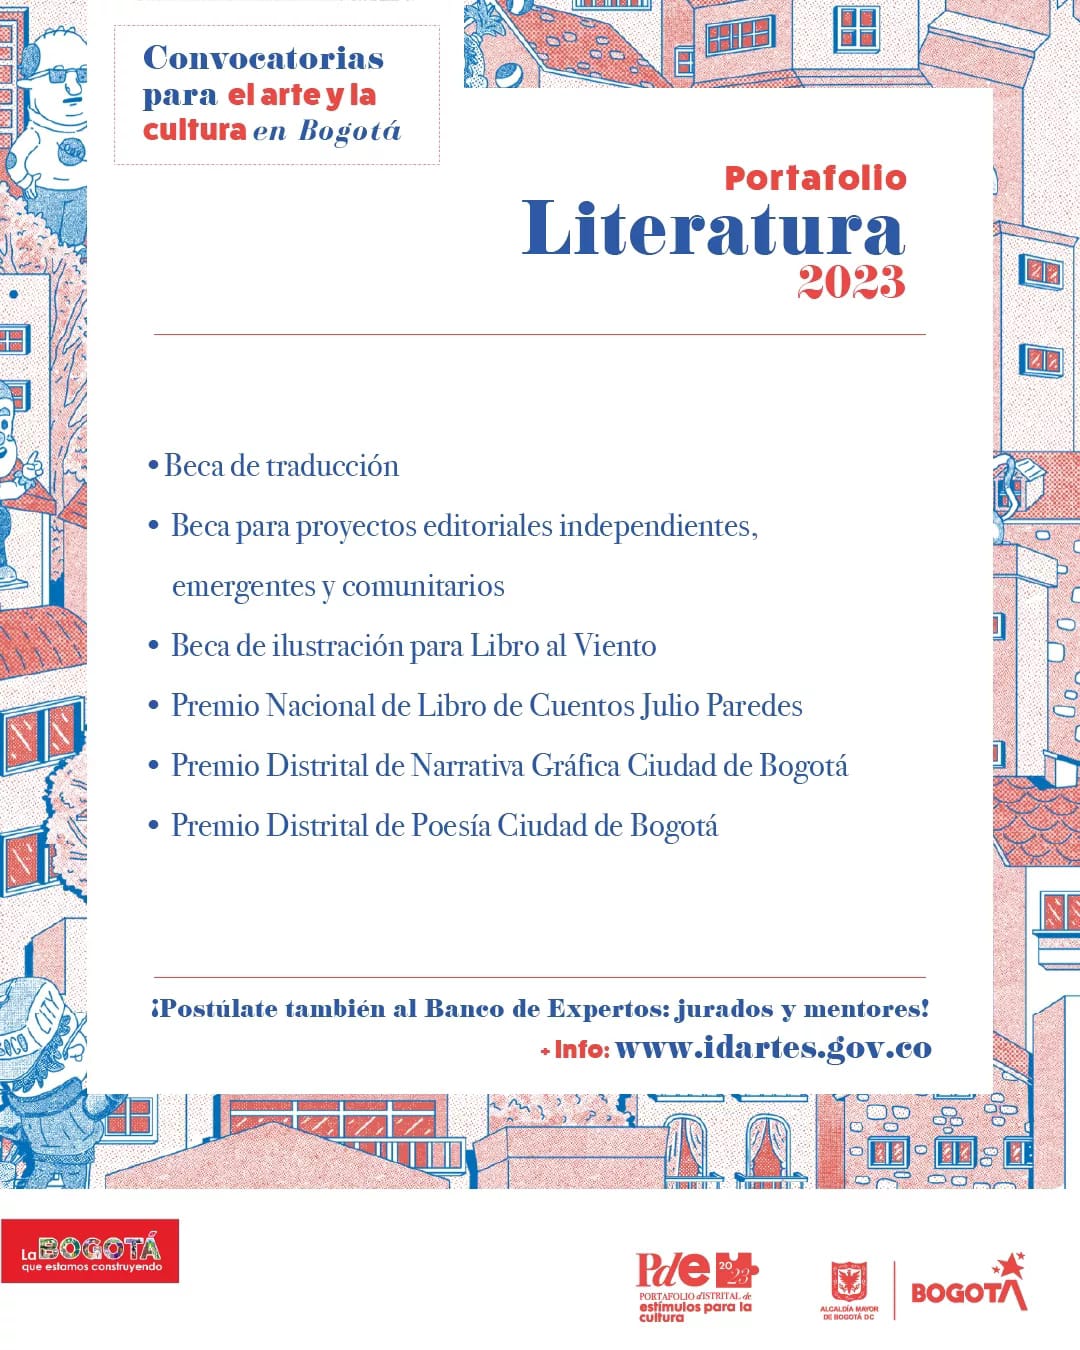 Portafolio Literatura | Convocatorias para el arte y la cultura en Bogotá 2023